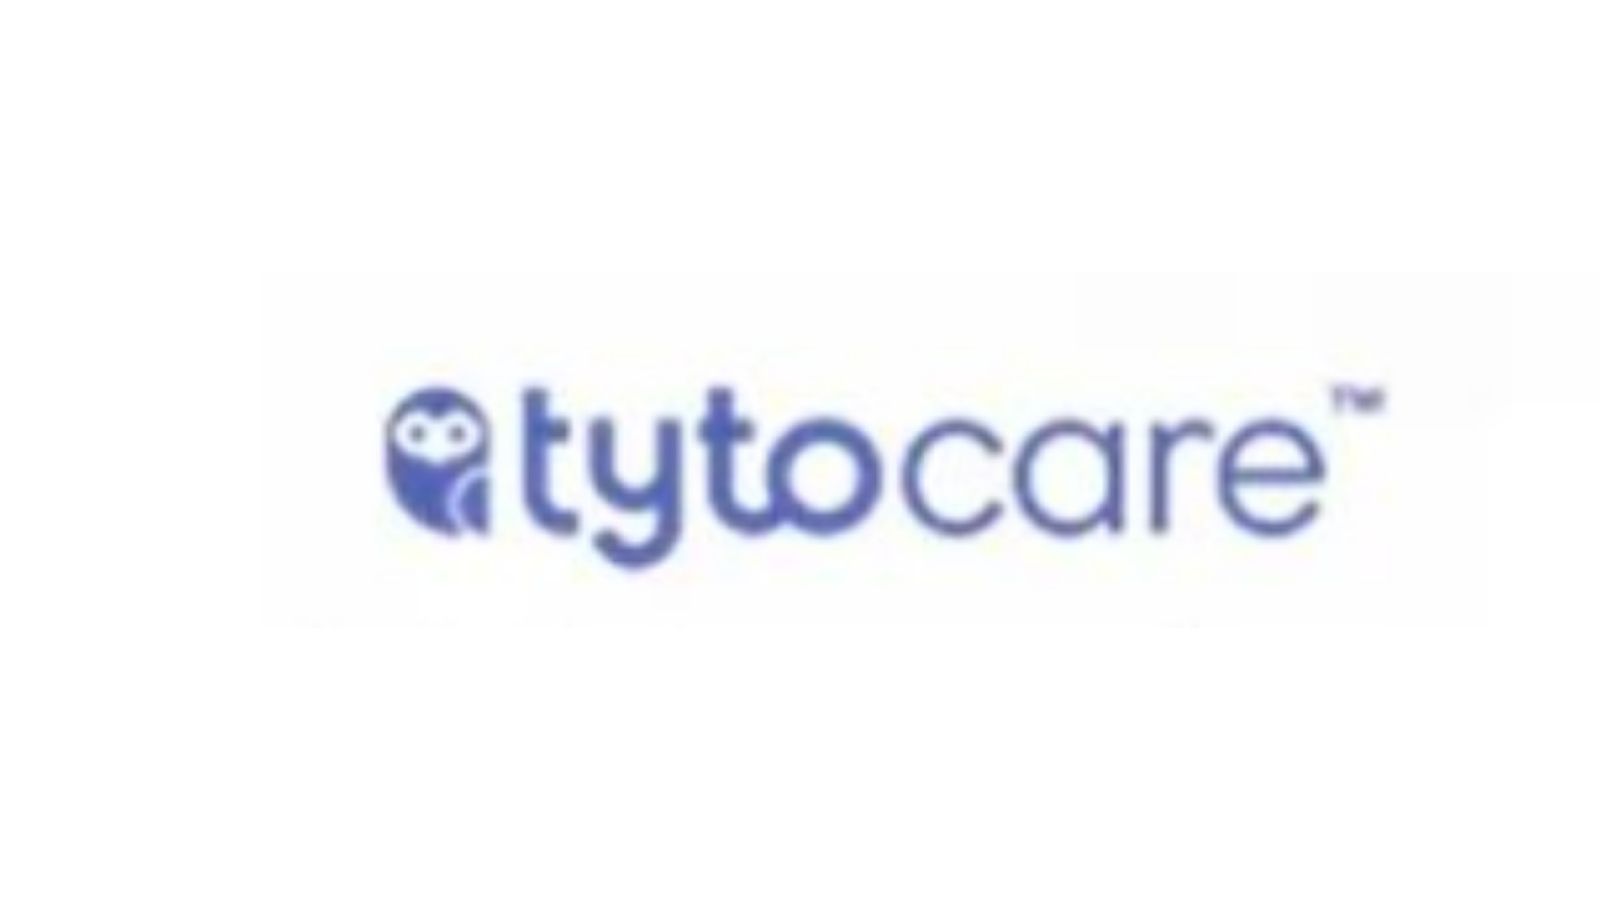 Tytocare——用于精确诊断和治疗的全栈平台和检查套件